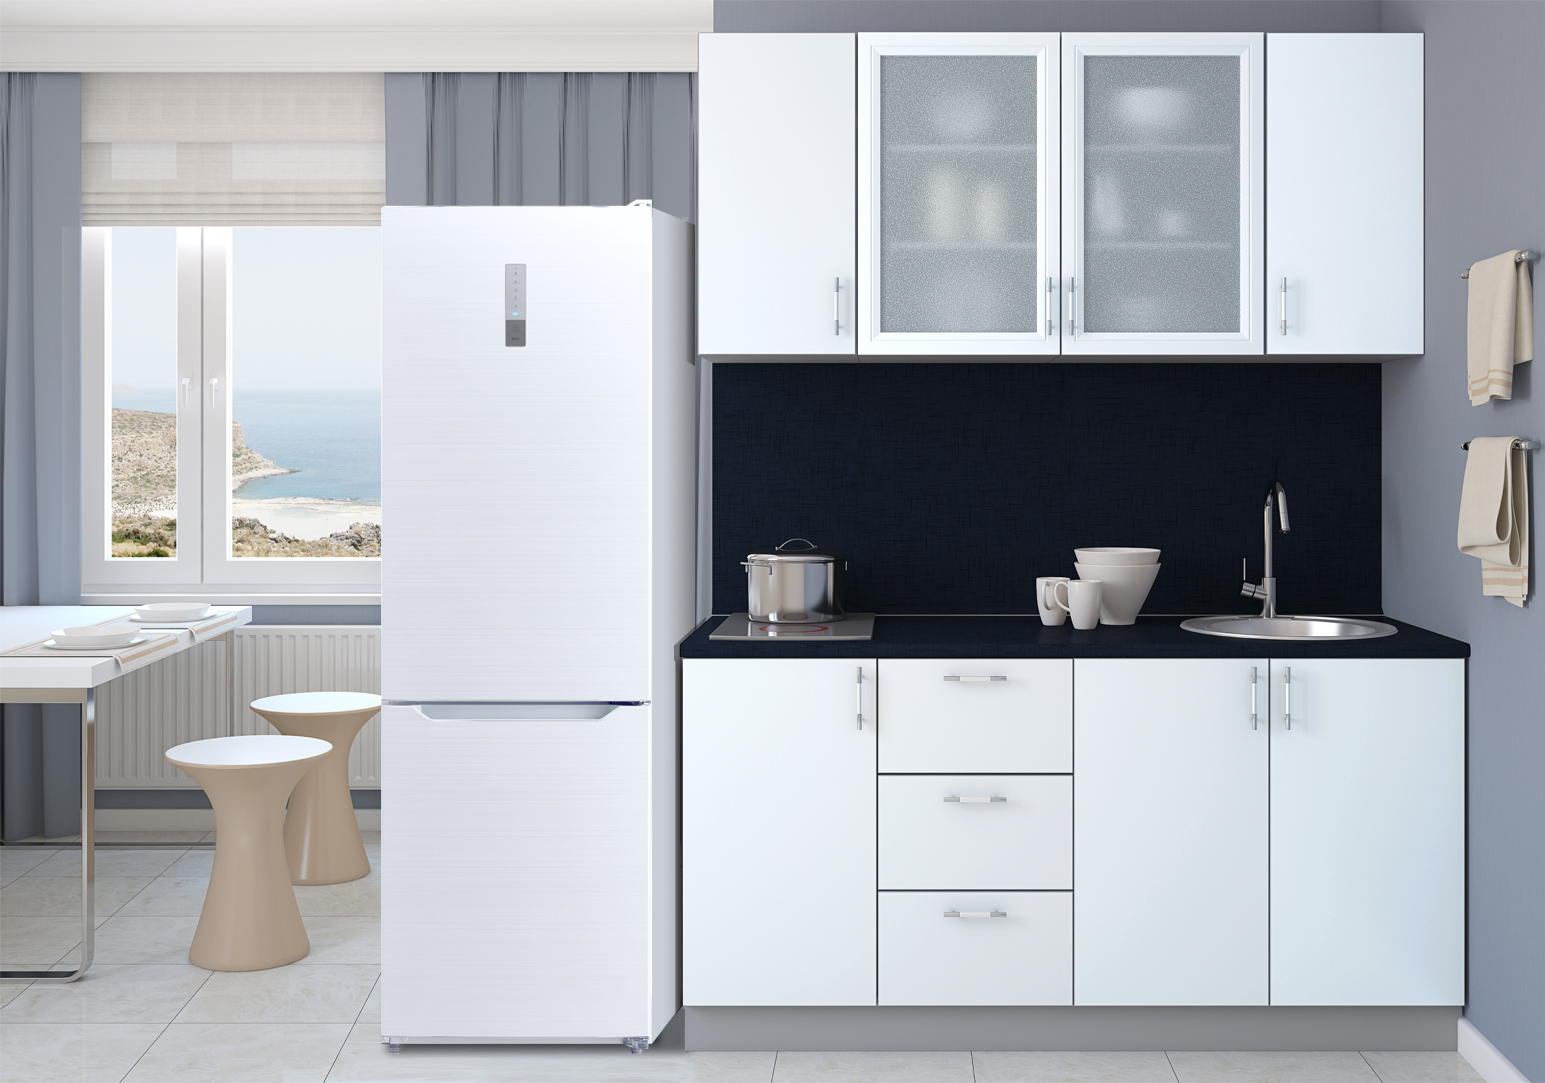 窄身薄型冰箱推薦 寬不到60 深不到65 解決小廚房空間困擾 家電補助 冰箱挑選 小廚房冰箱 大紀元